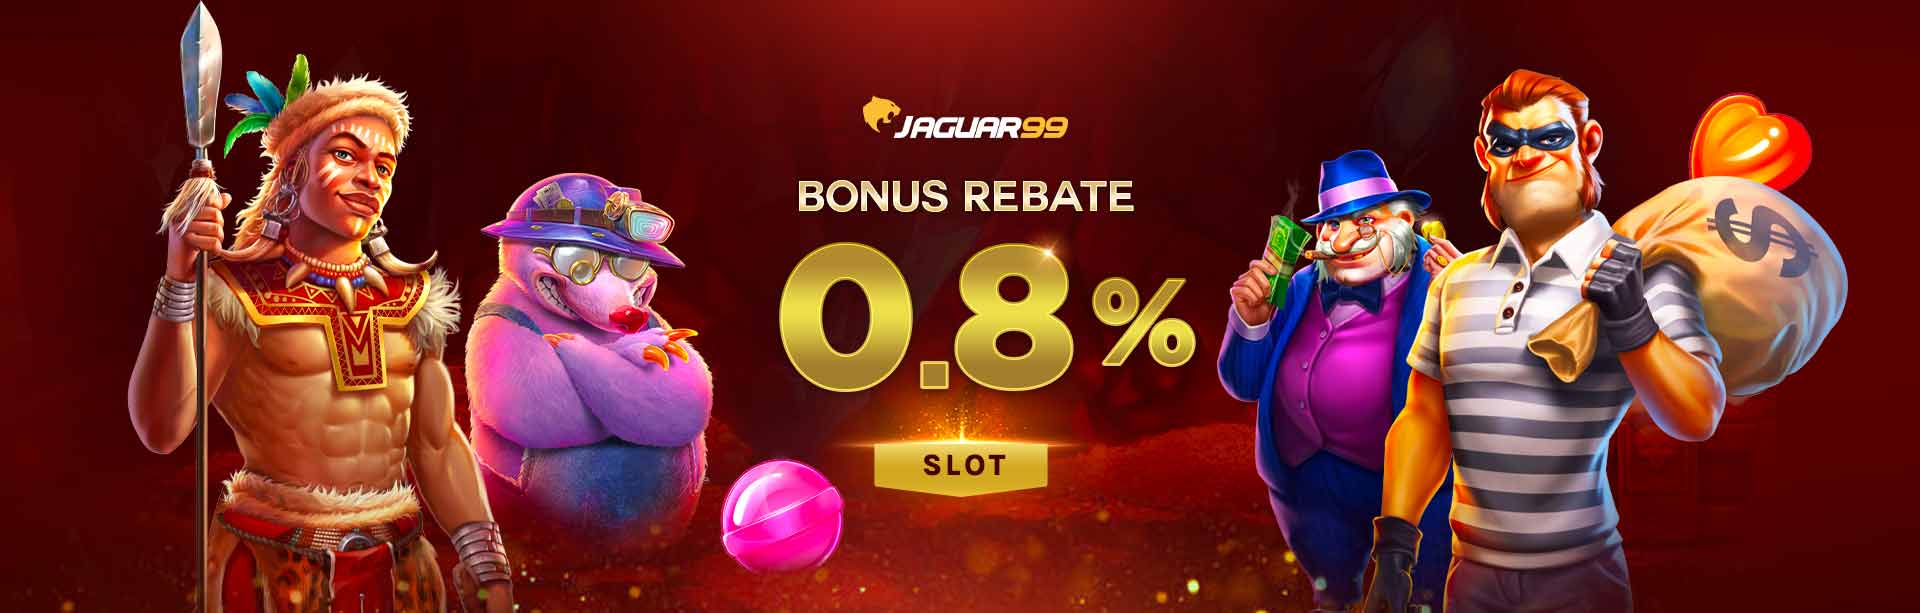 Jaguar99 Bonus Rebate 0.8% Slot